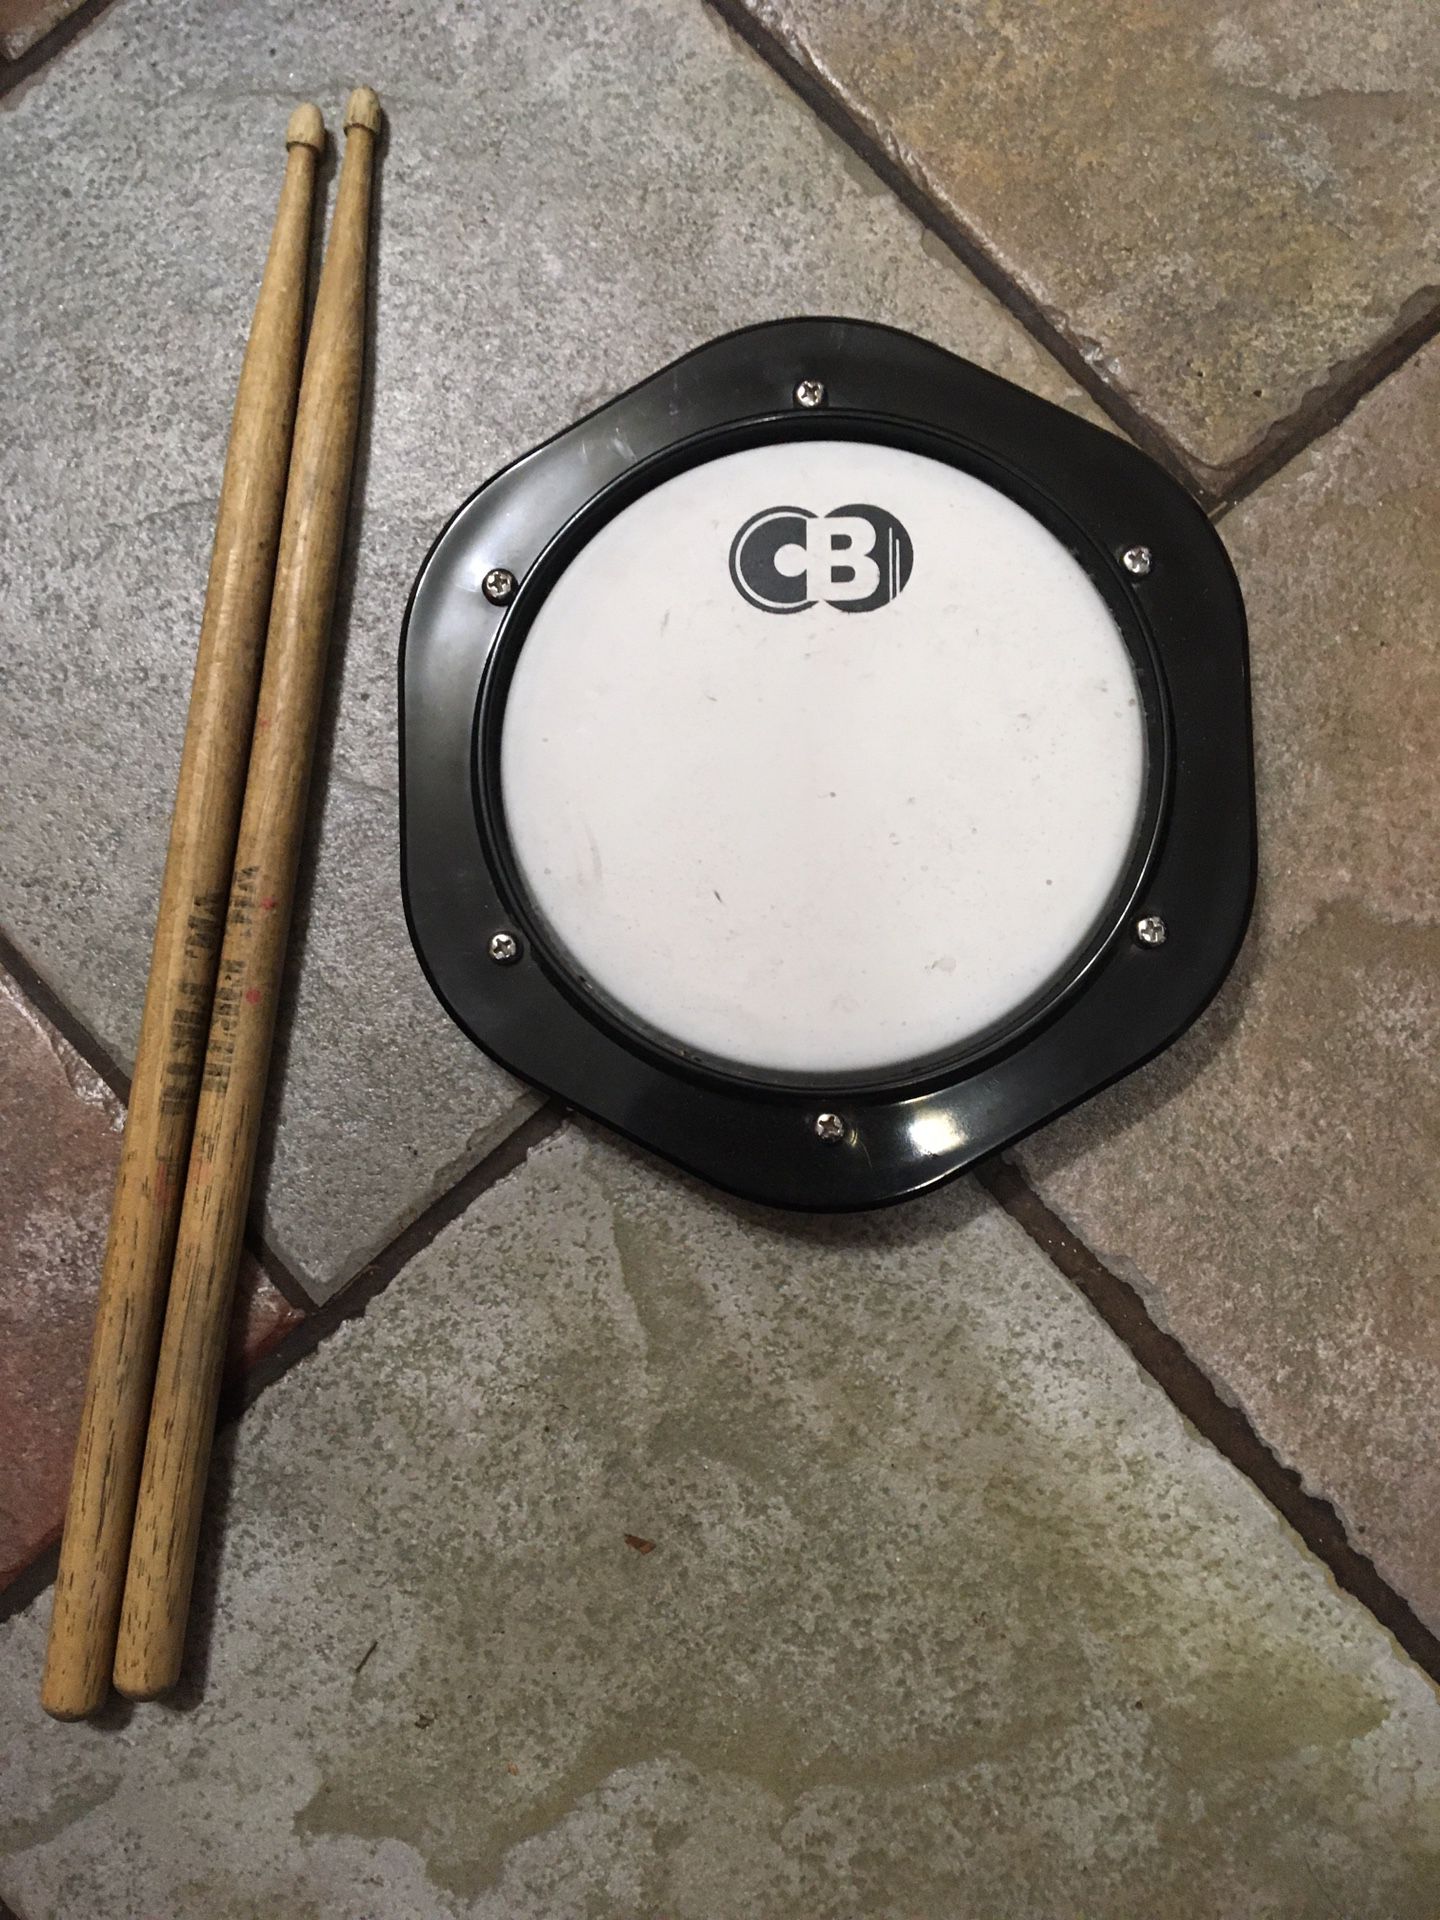 CB percussion practice drum pad